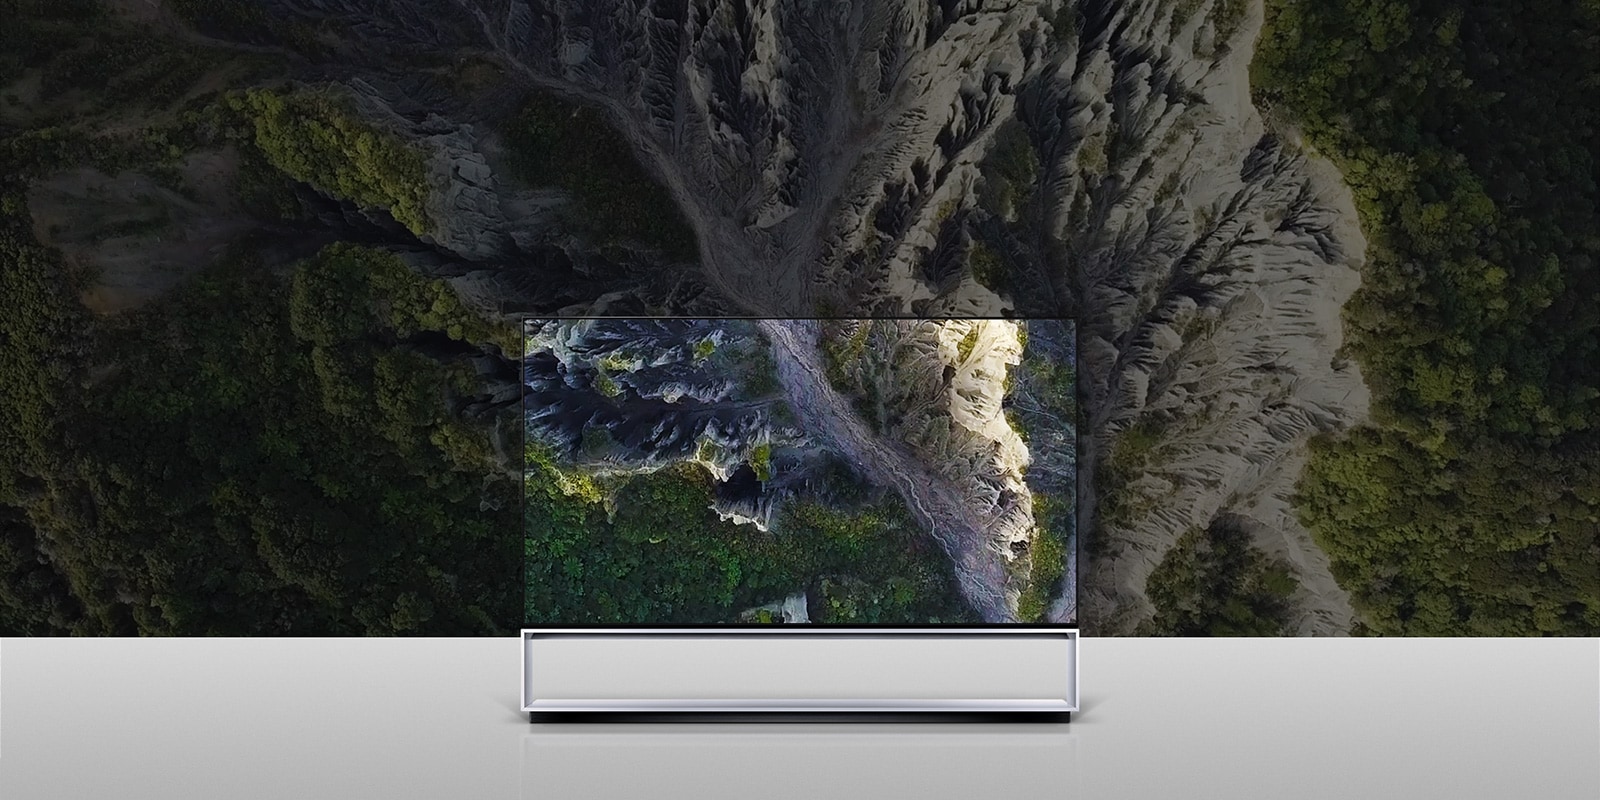 Slika LG SIGNATURE OLED TV Z9 sa zaslonom ispunjenim klisurama.